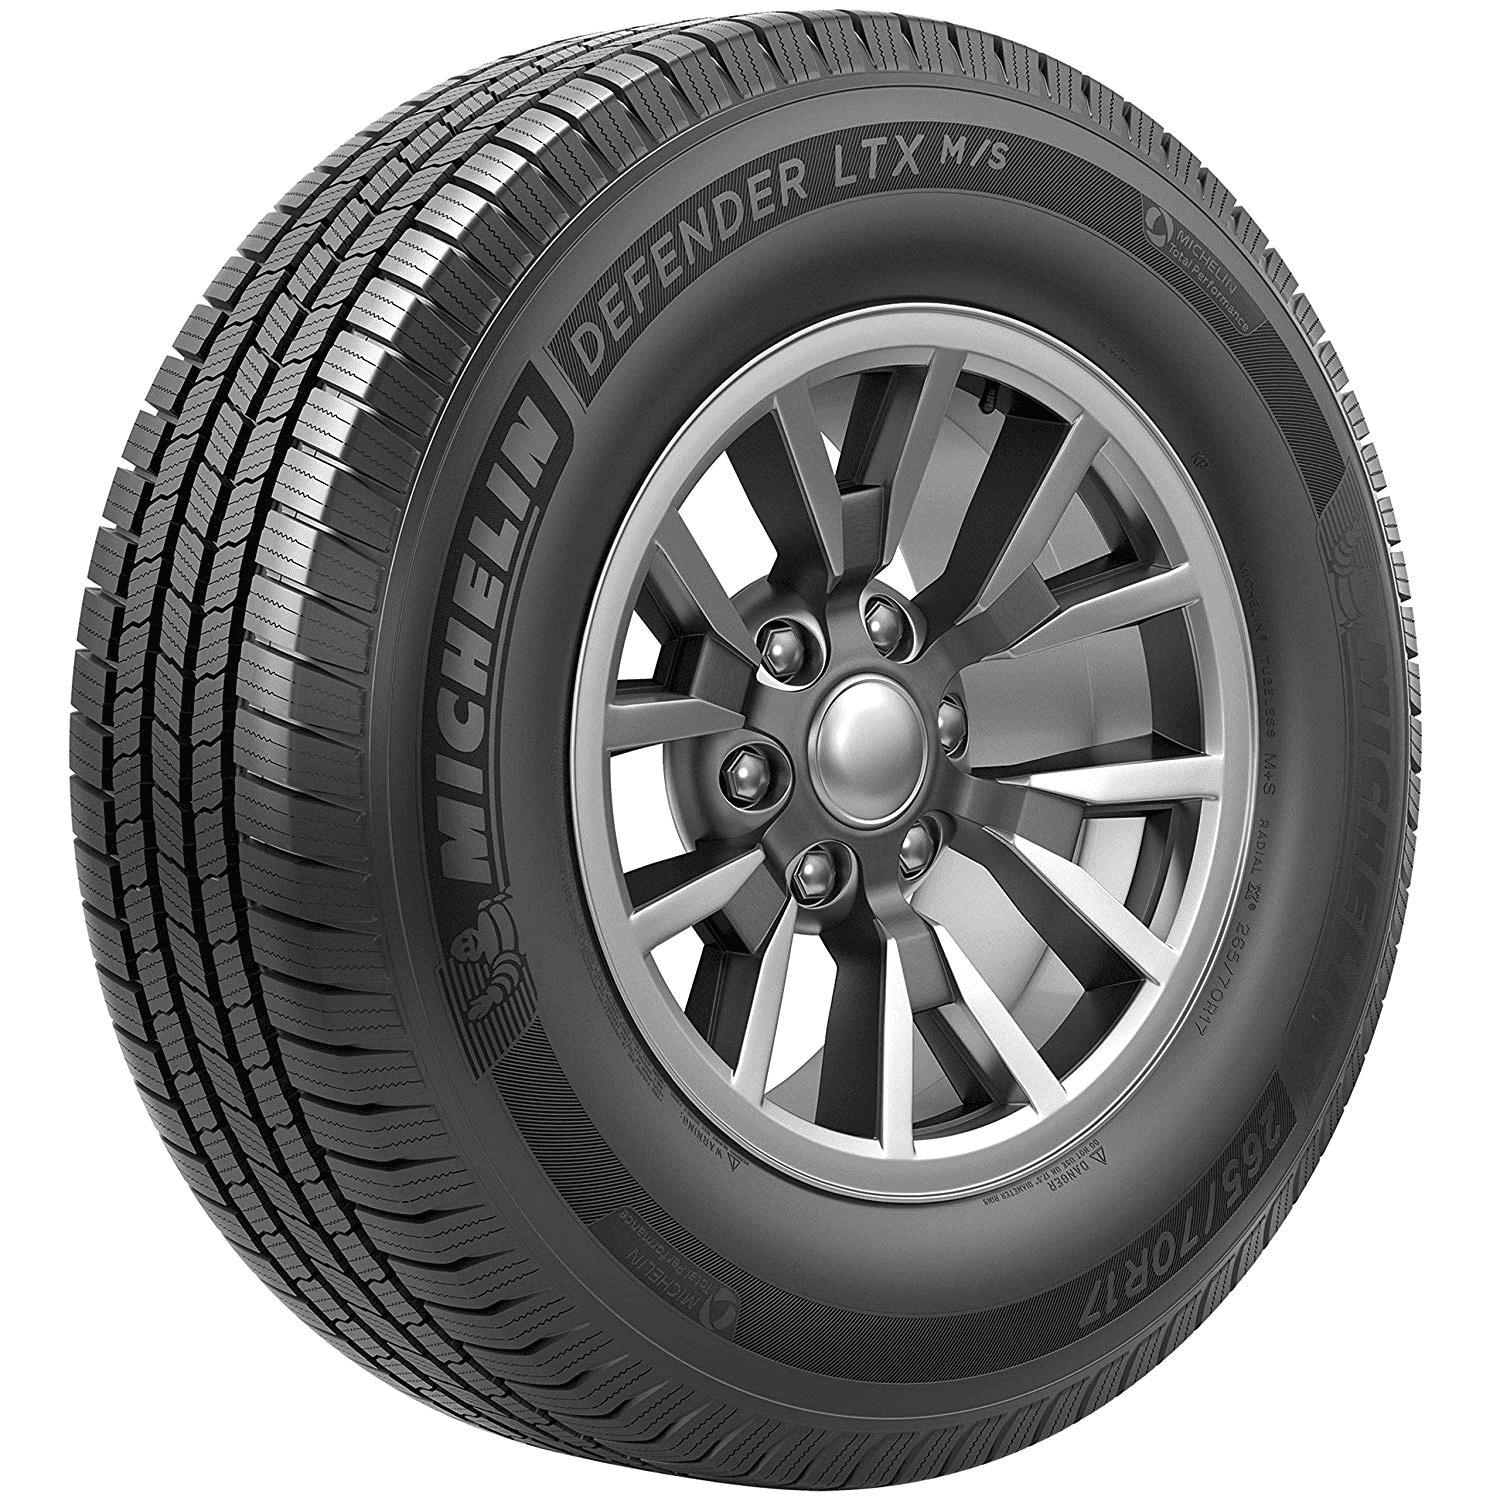 Michelin Defender LTX M/S 275/55R20 113 T Tire.